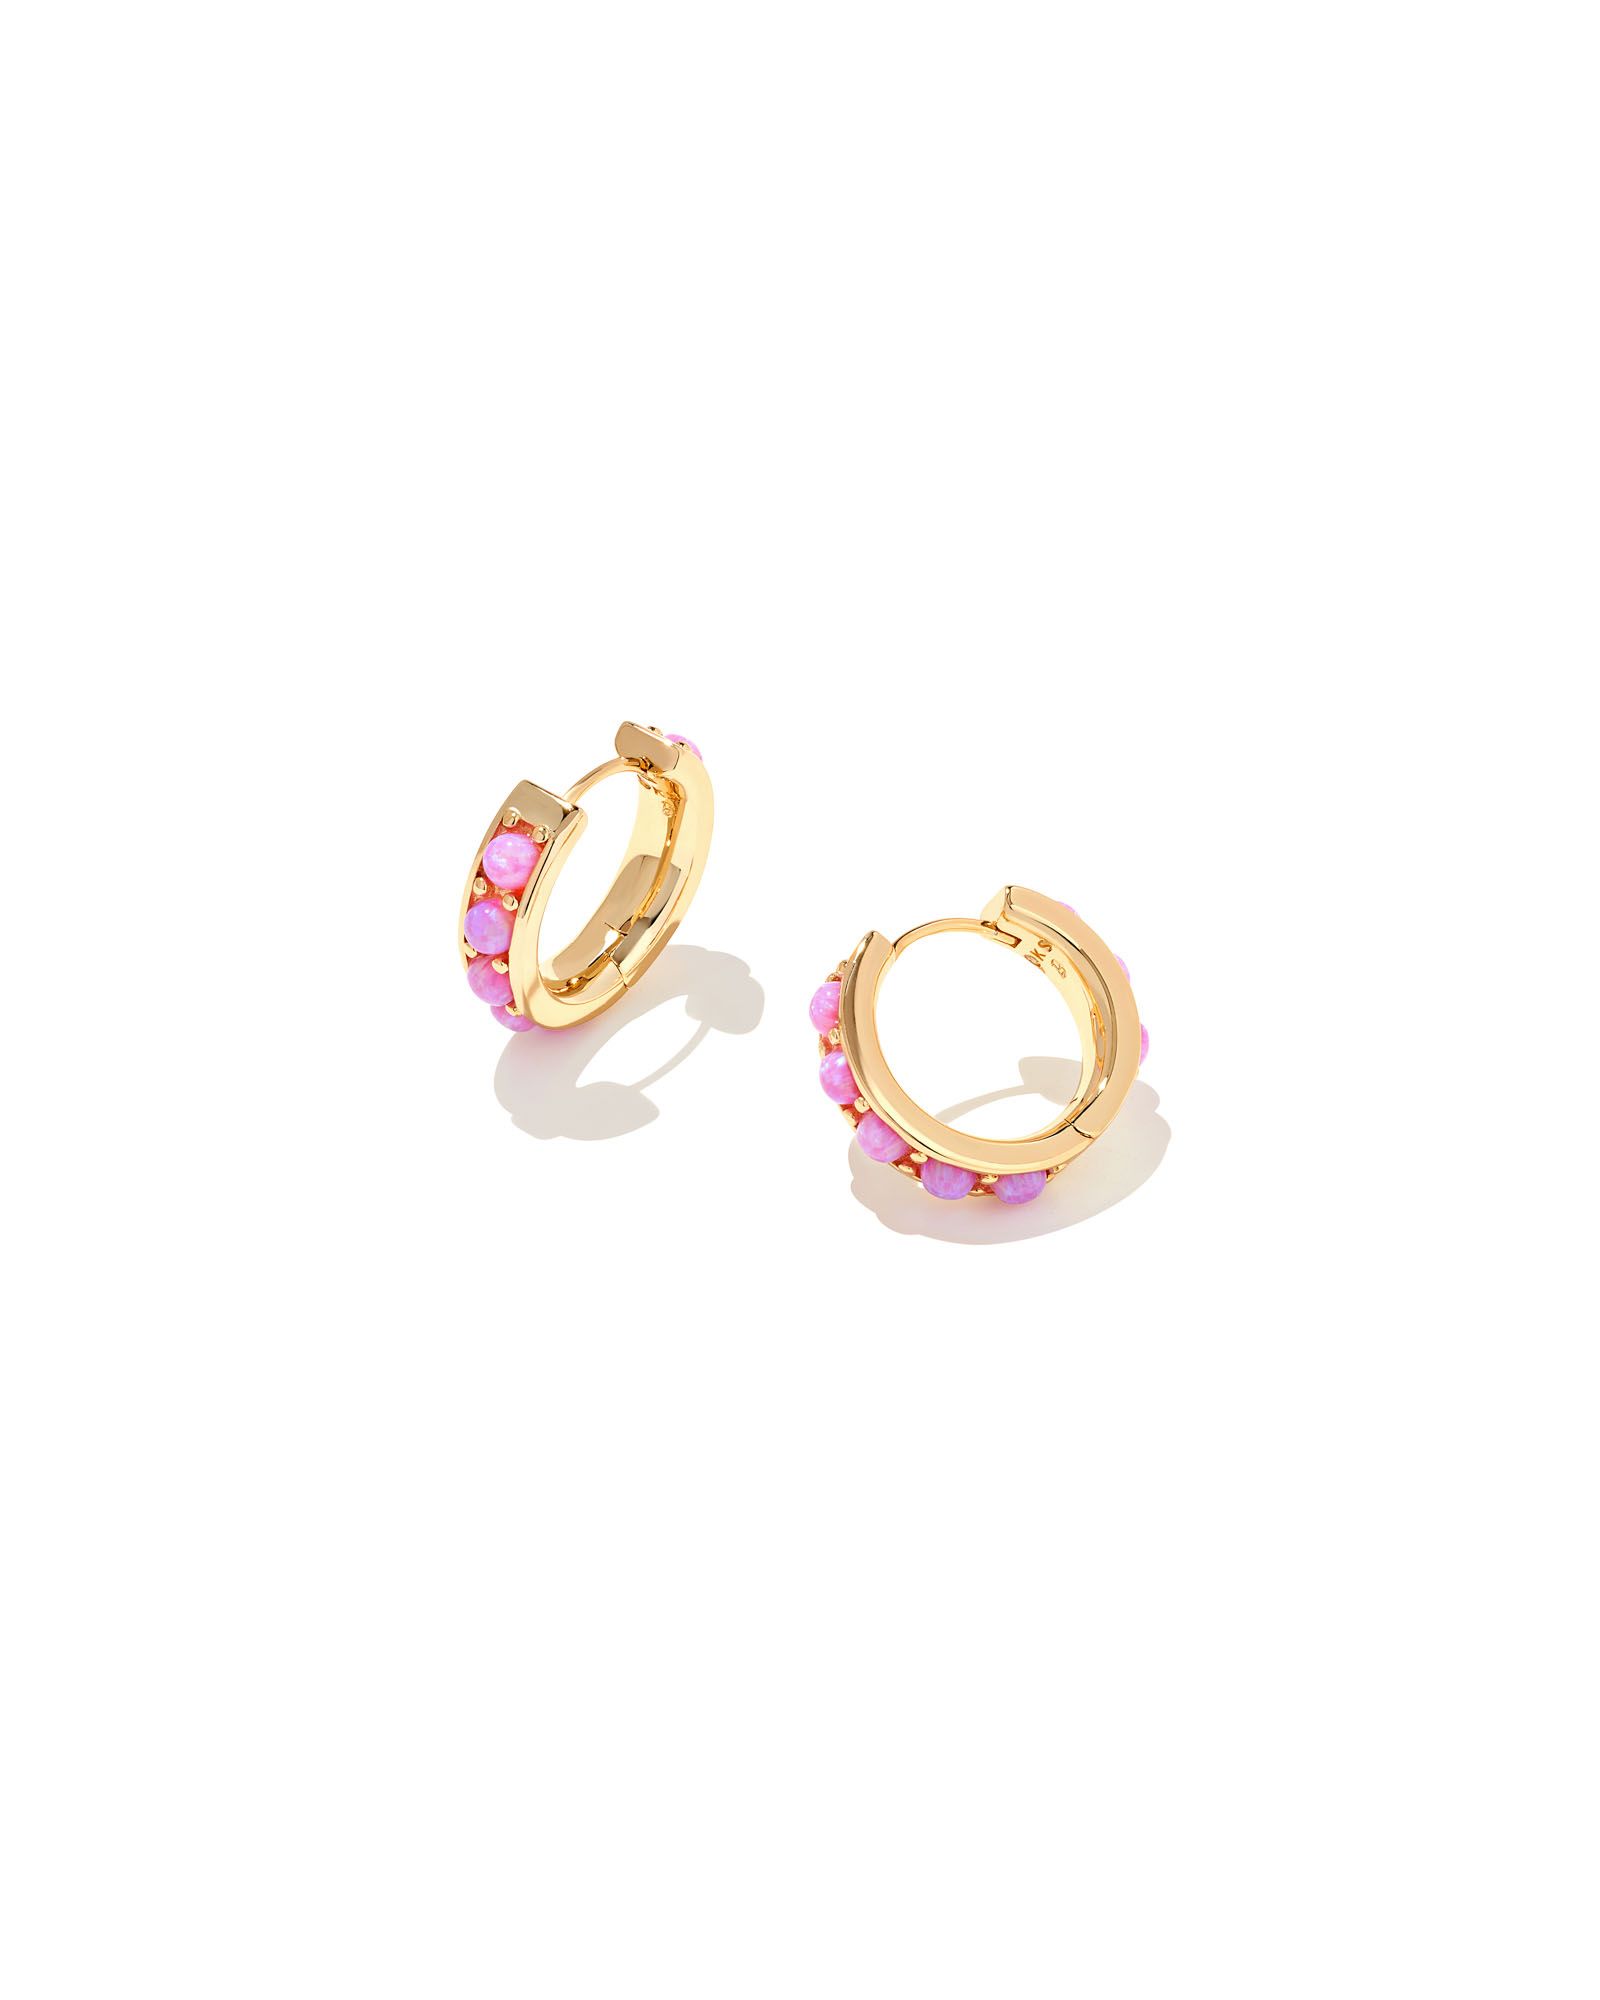 Barbie™ x Kendra Scott Gold Huggie Earrings in Pink Opal | Kendra Scott | Kendra Scott